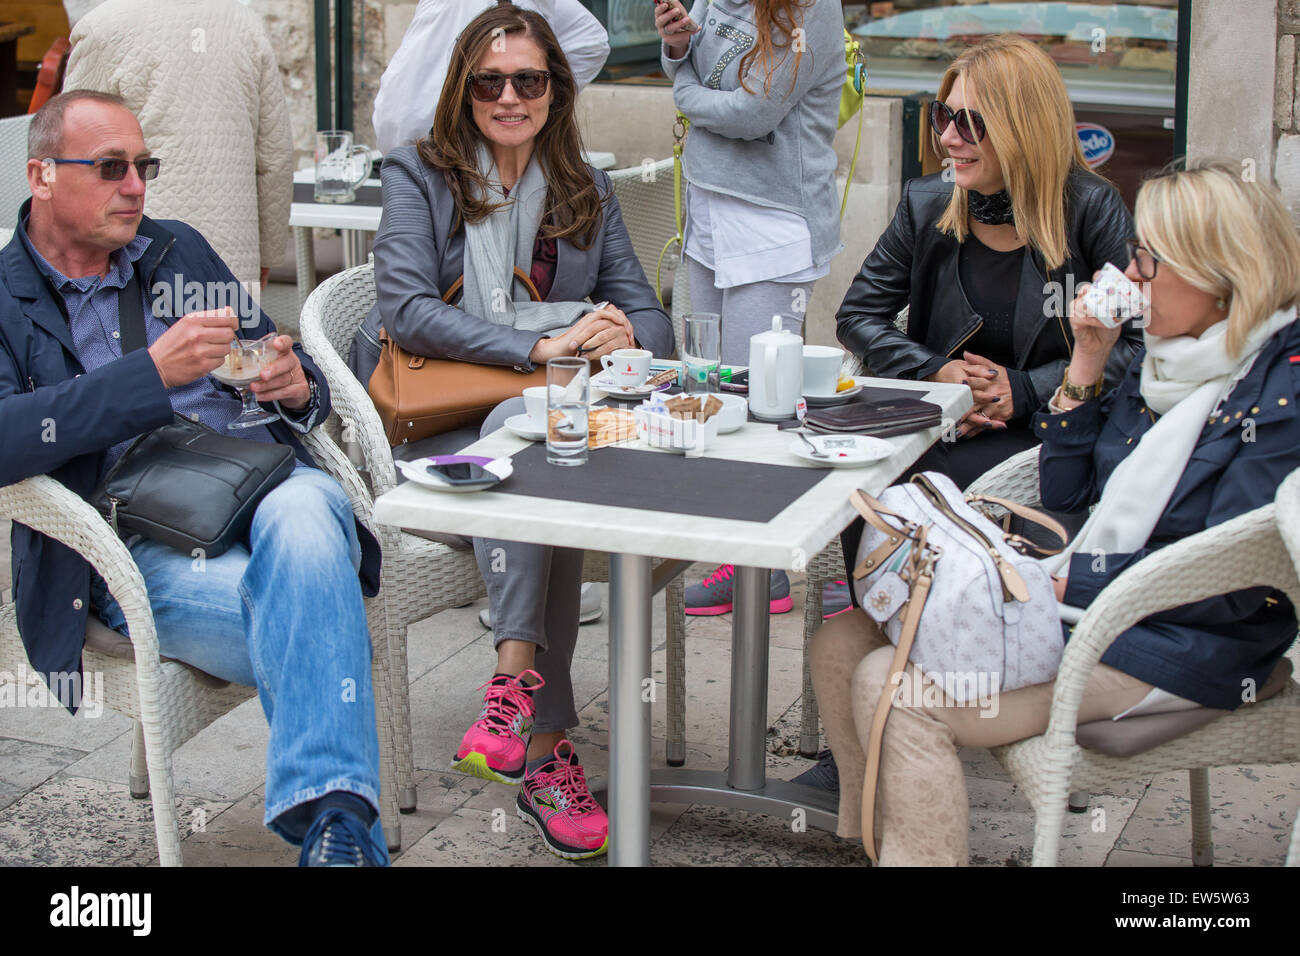 Slavica Ecclestone, ex modello ed ex-moglie di Formula One Racing CEO Bernie Ecclestone, avente un caffè con gli amici in Stradun, Croazia. Dotato di: Slavica Ecclestone dove: Dubrovnik, Croazia quando: 17 Apr 2015 Foto Stock